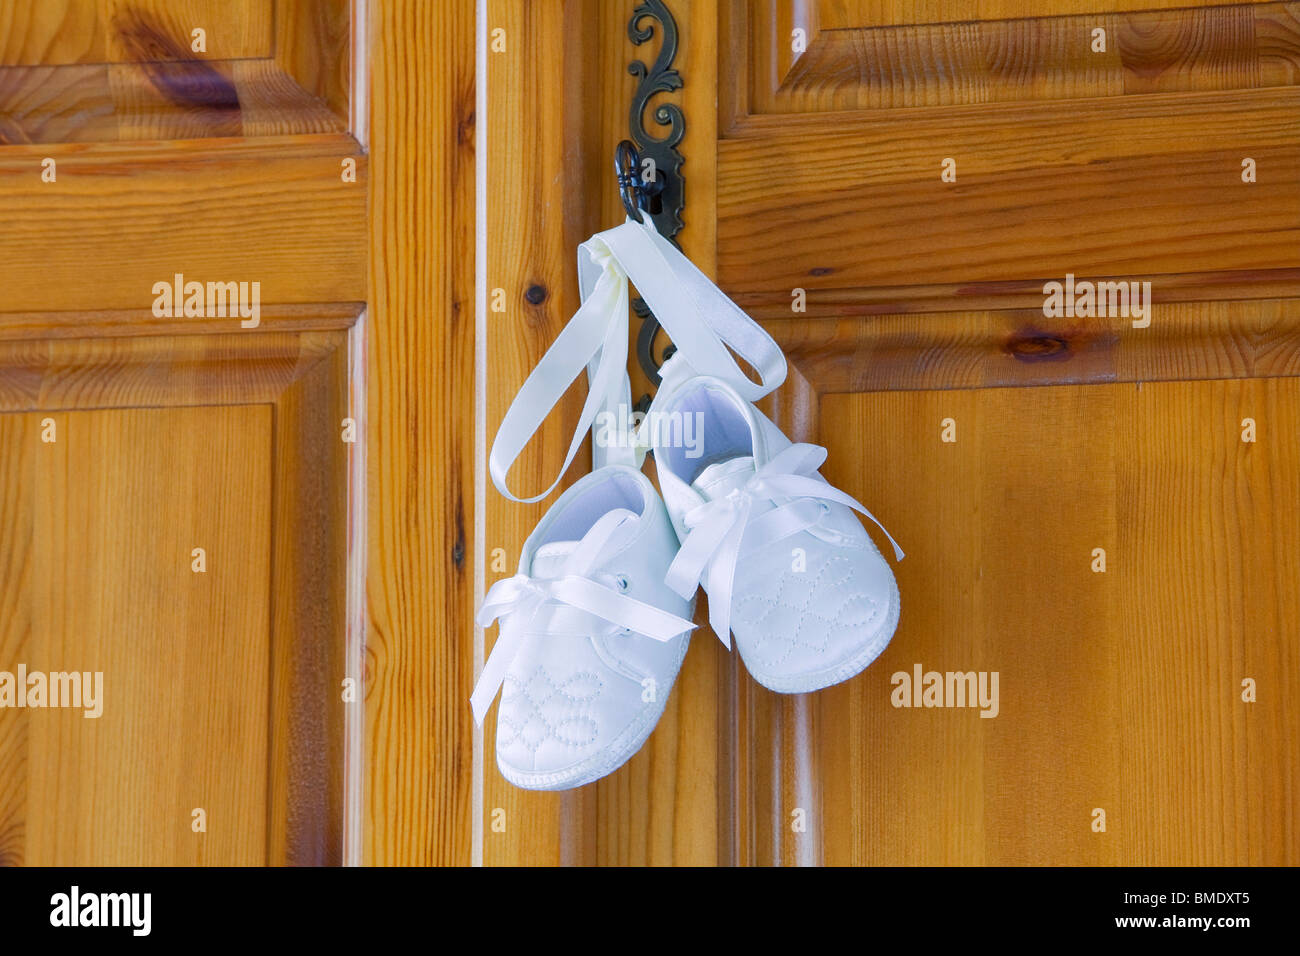 Taufe, Schuhe oder Stiefel für ein Baby zusammengebunden mit Seidenband, von einer Schranktür hängen Stockfoto